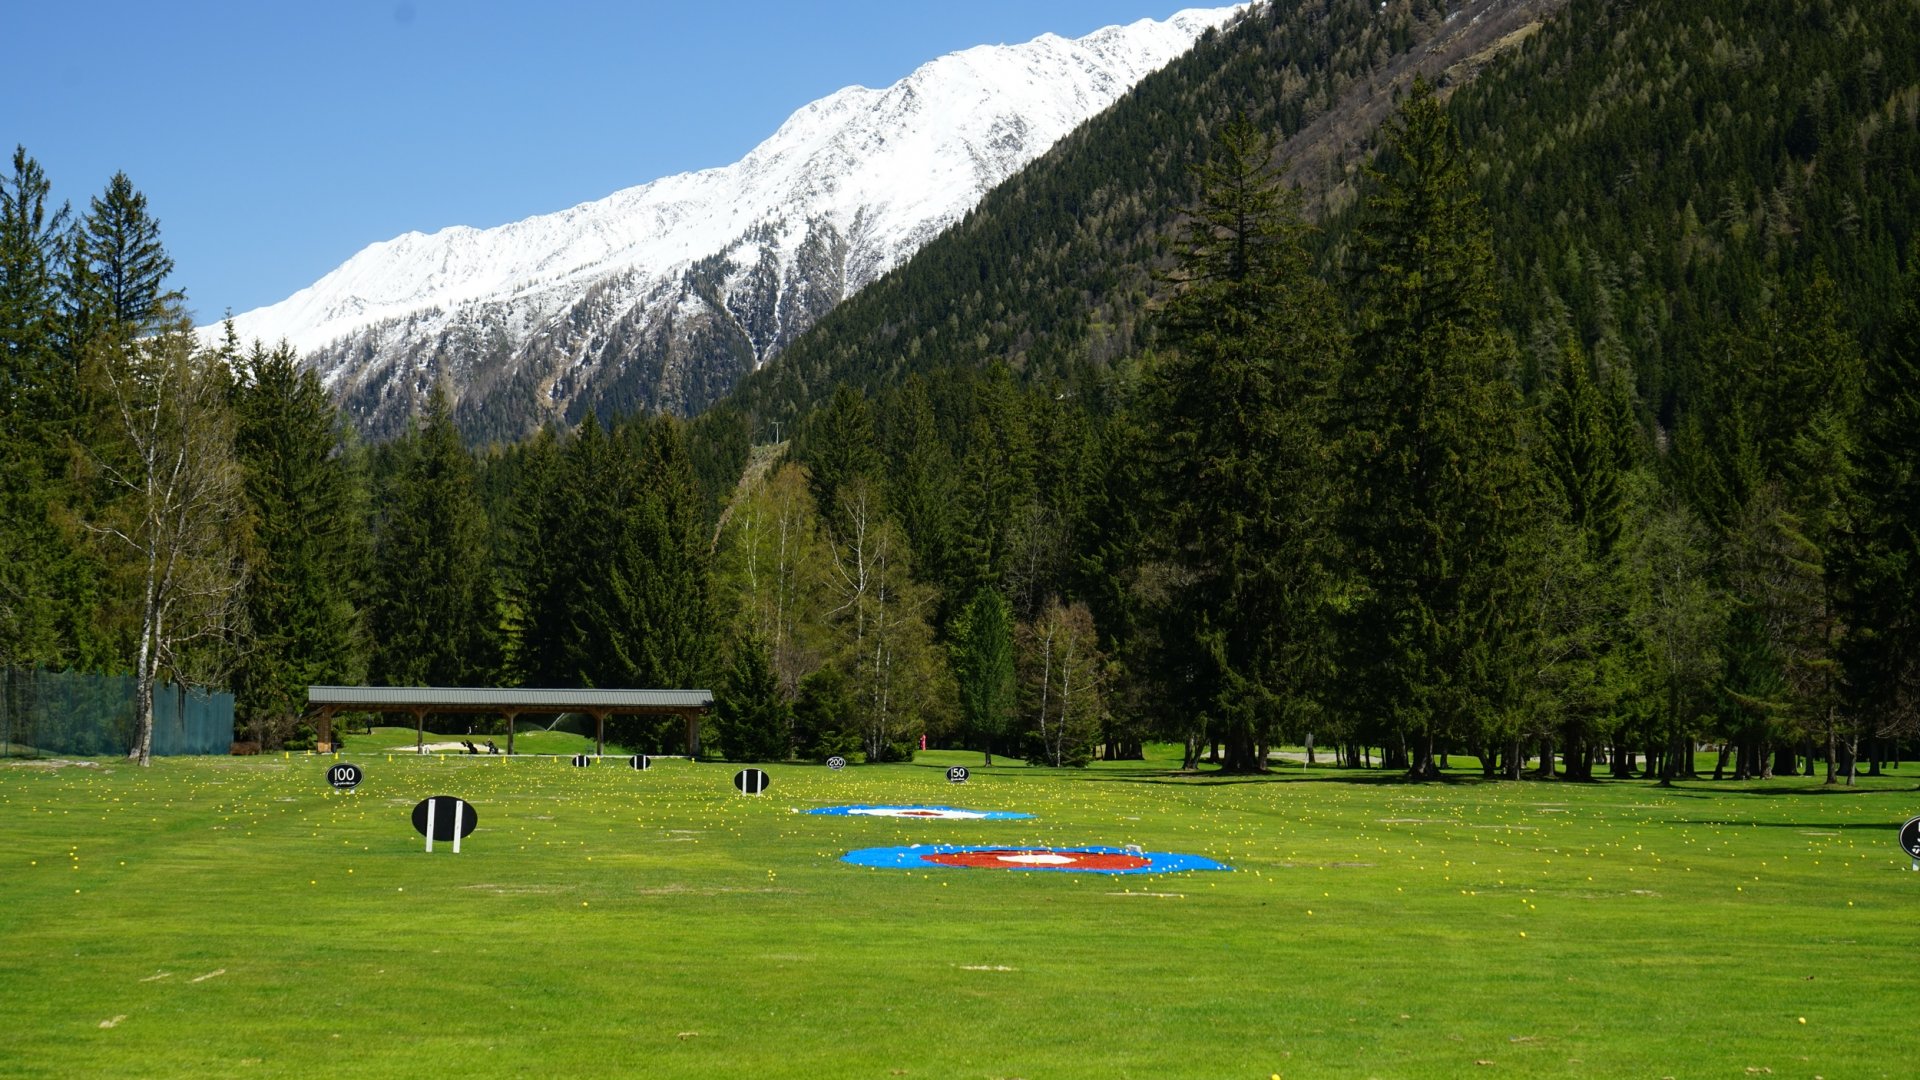 Practice & zone d'entrainement golf de chamonix